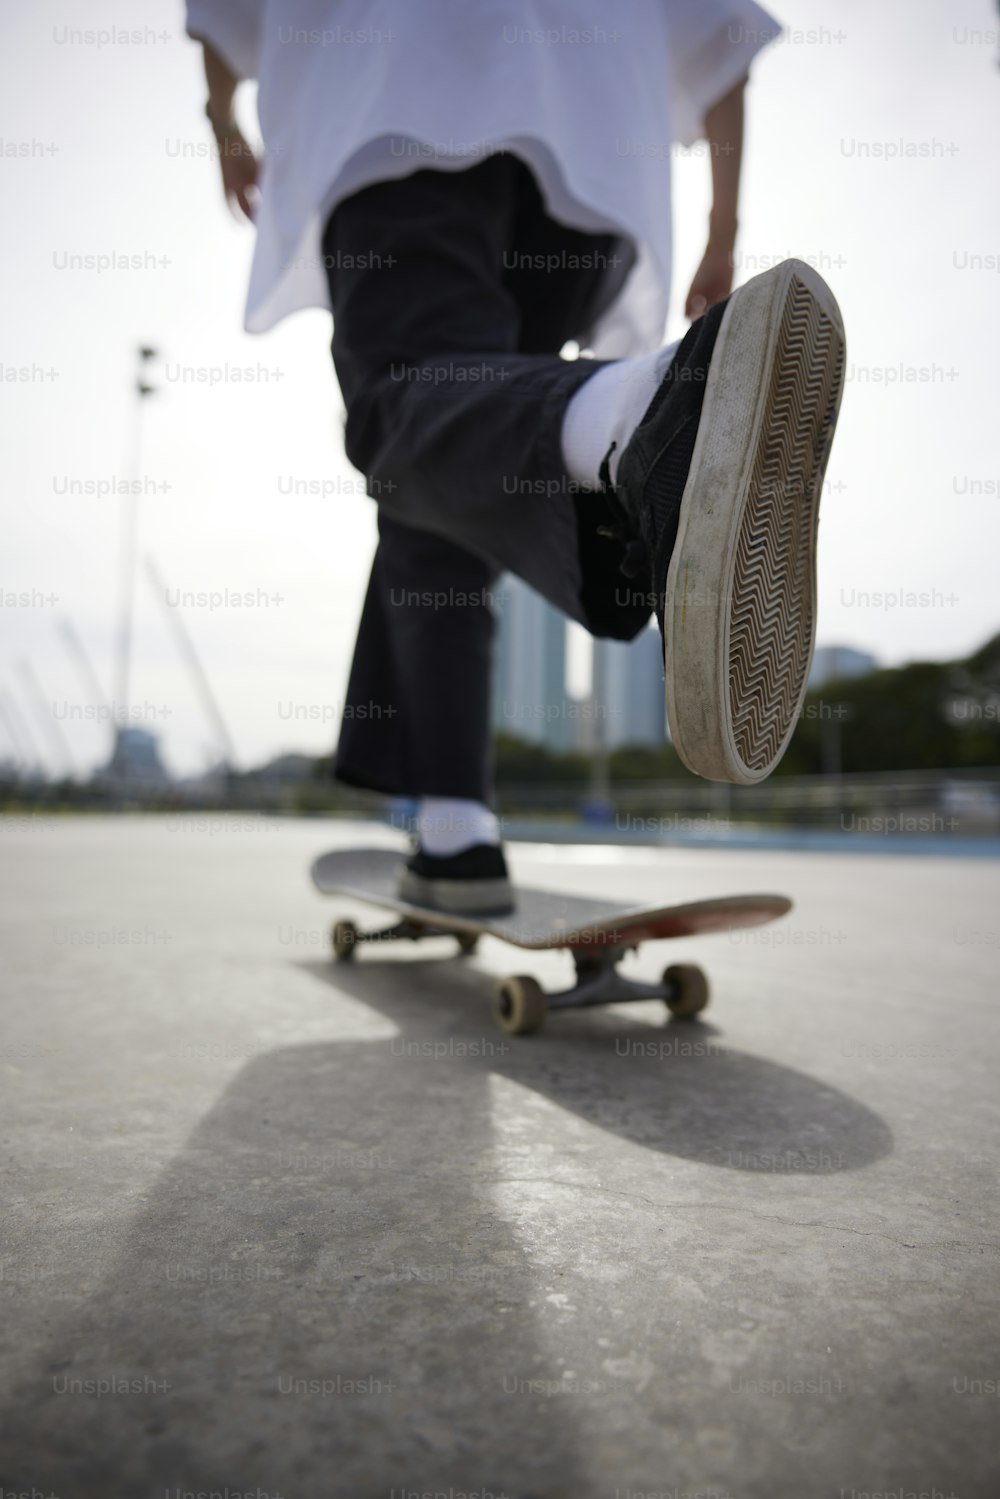 eine Person auf einem Skateboard, die einen Trick macht